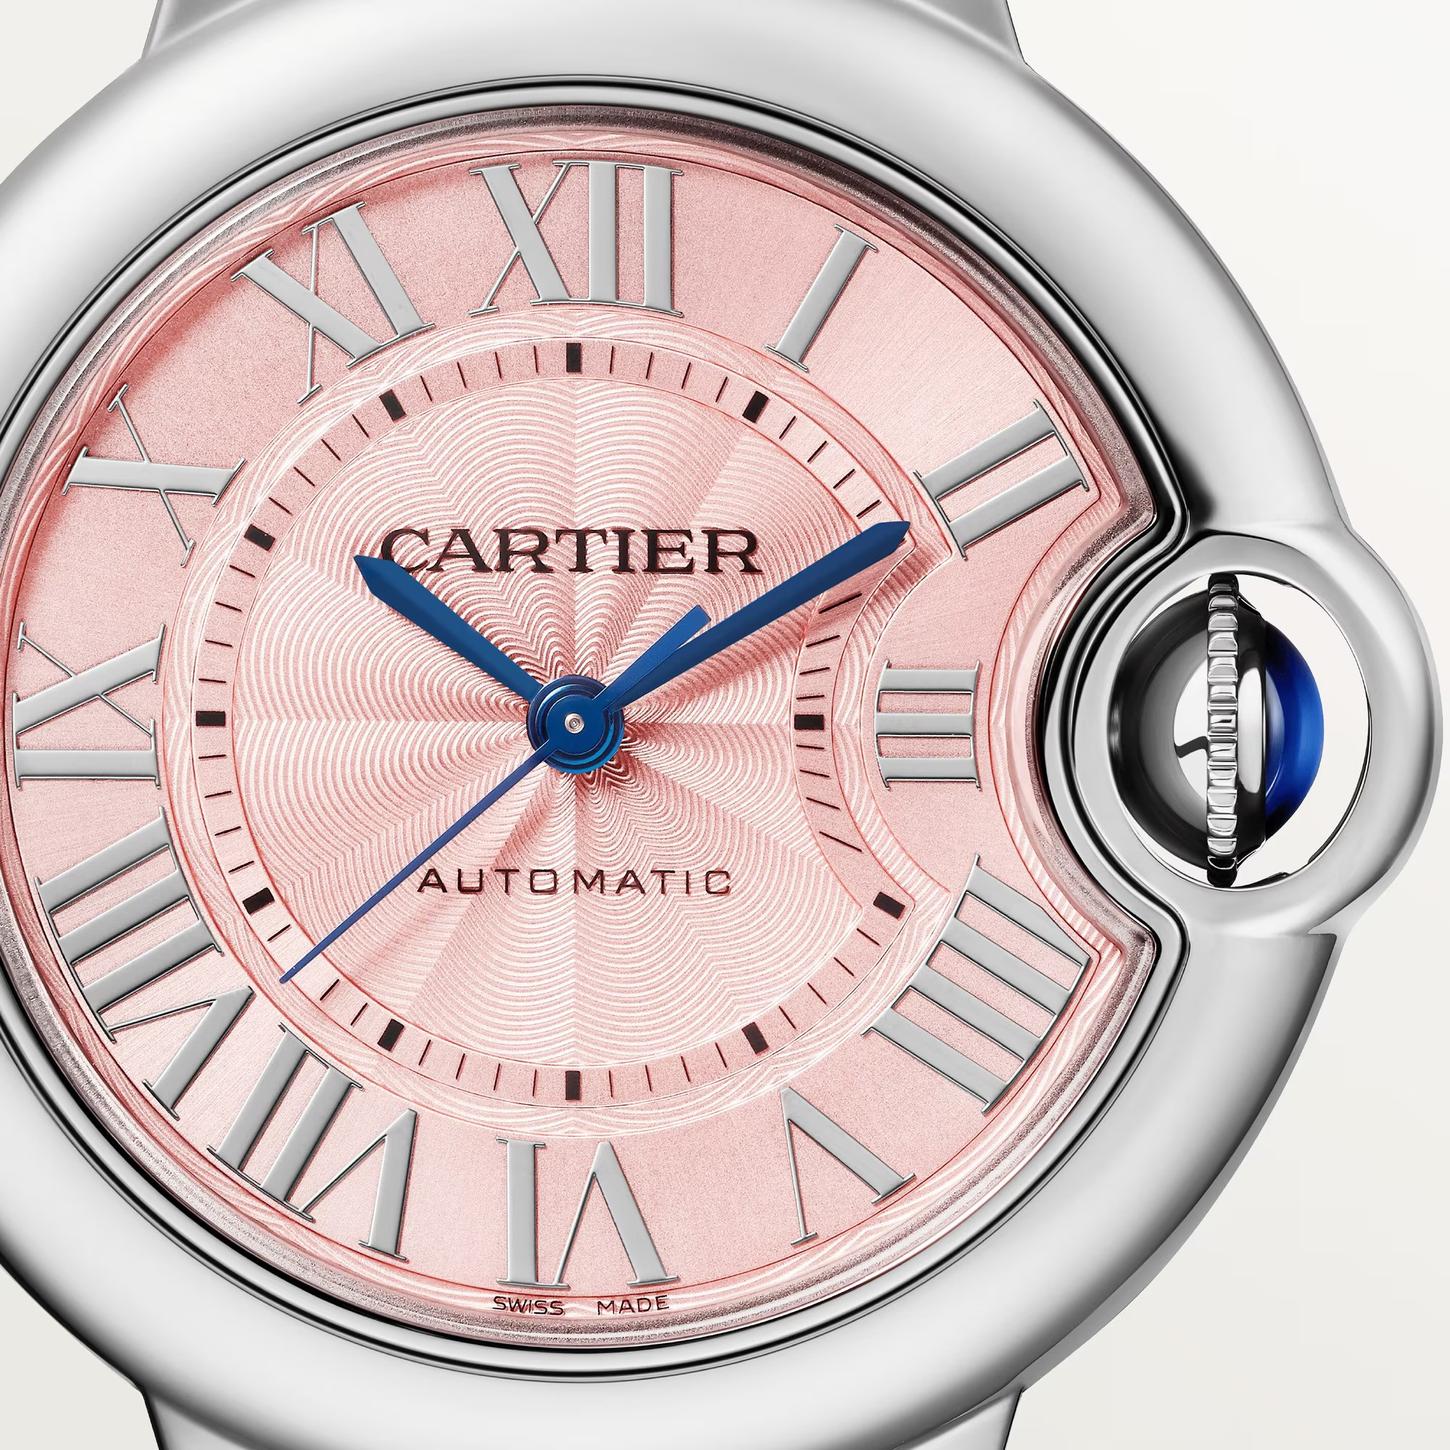 Ballon de Cartier Watch with Pink Dial, 33mm 1